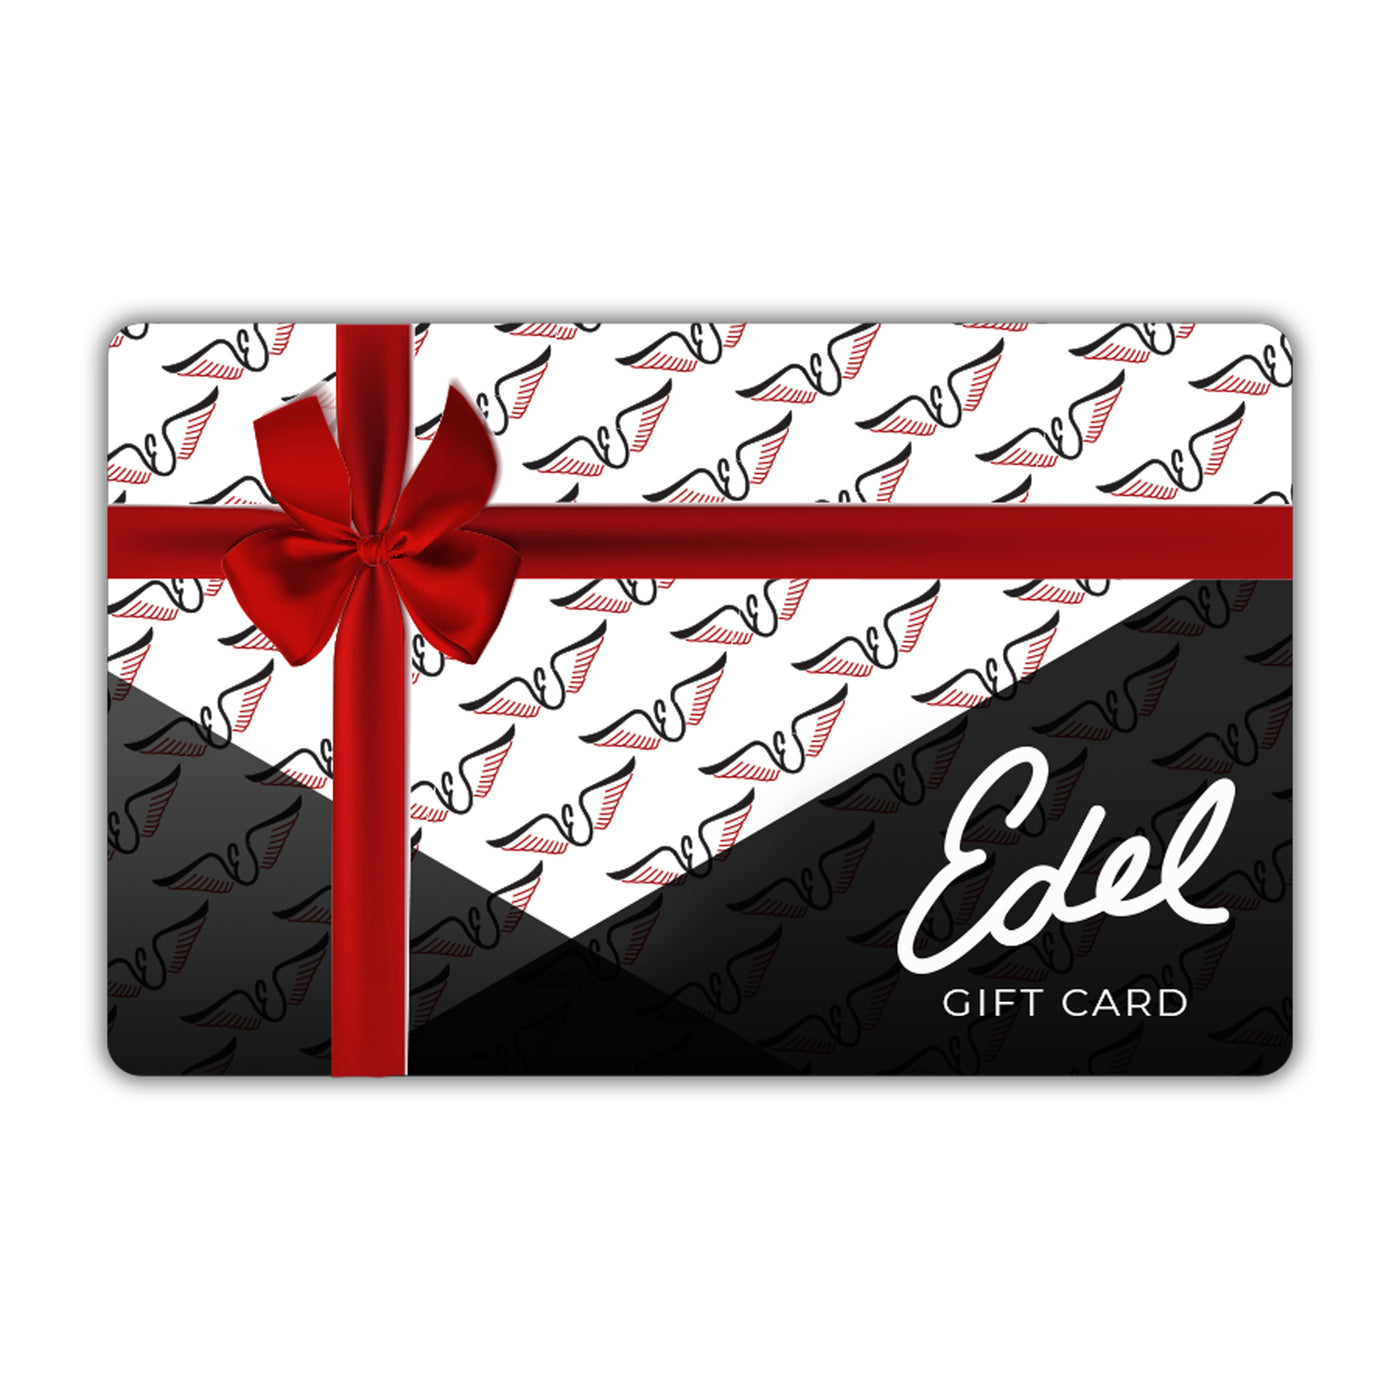 Edel Golf Digital Gift Card